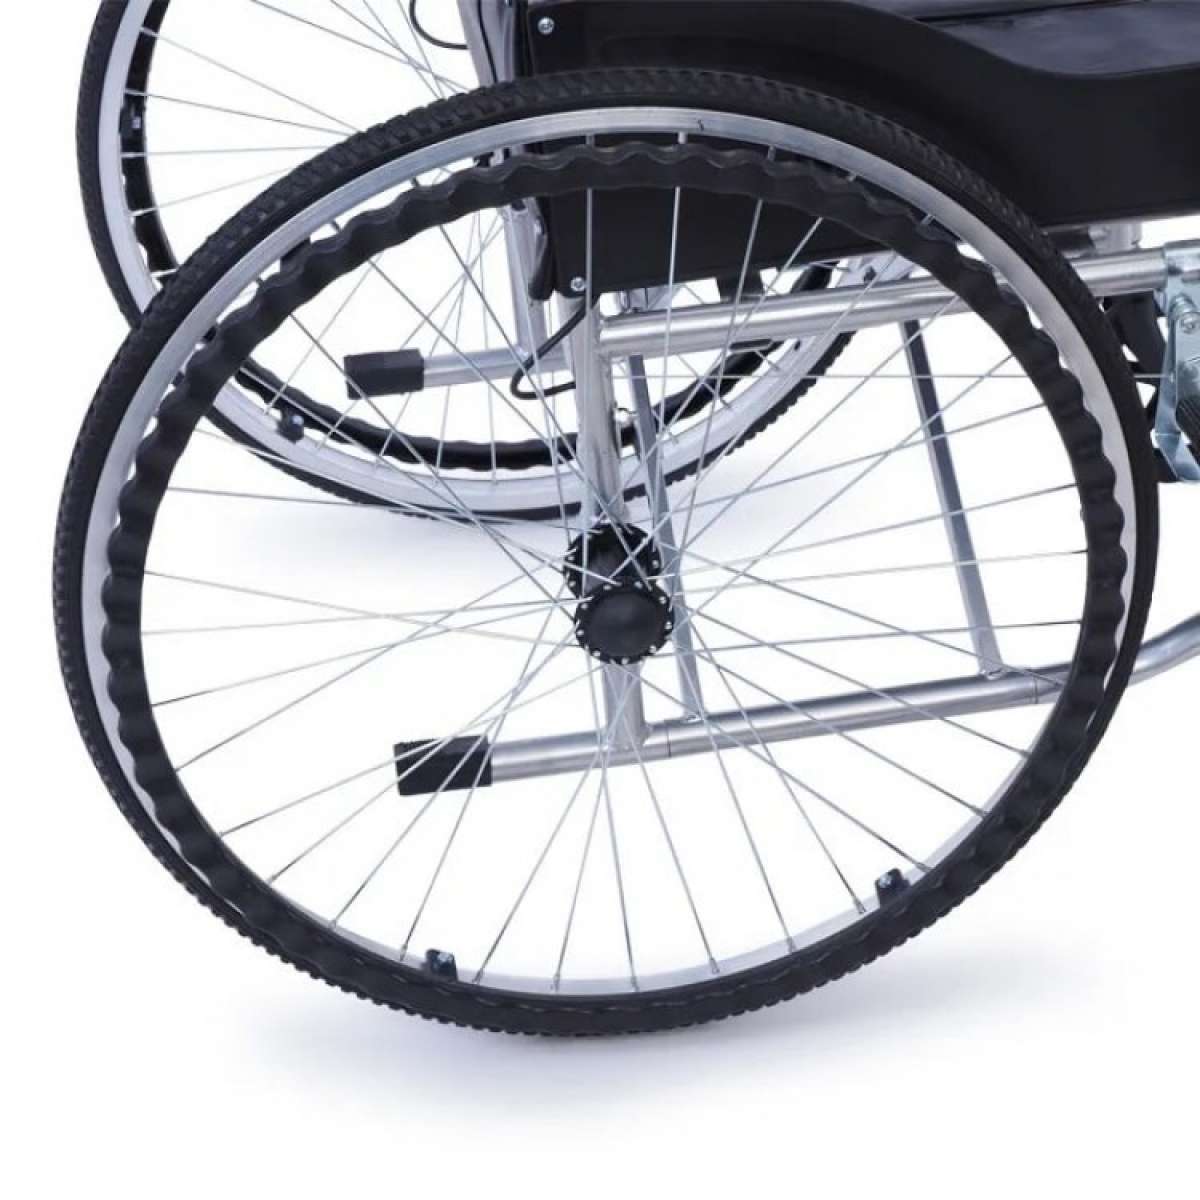 Кресло-коляска с санитарным оснащением MK-340